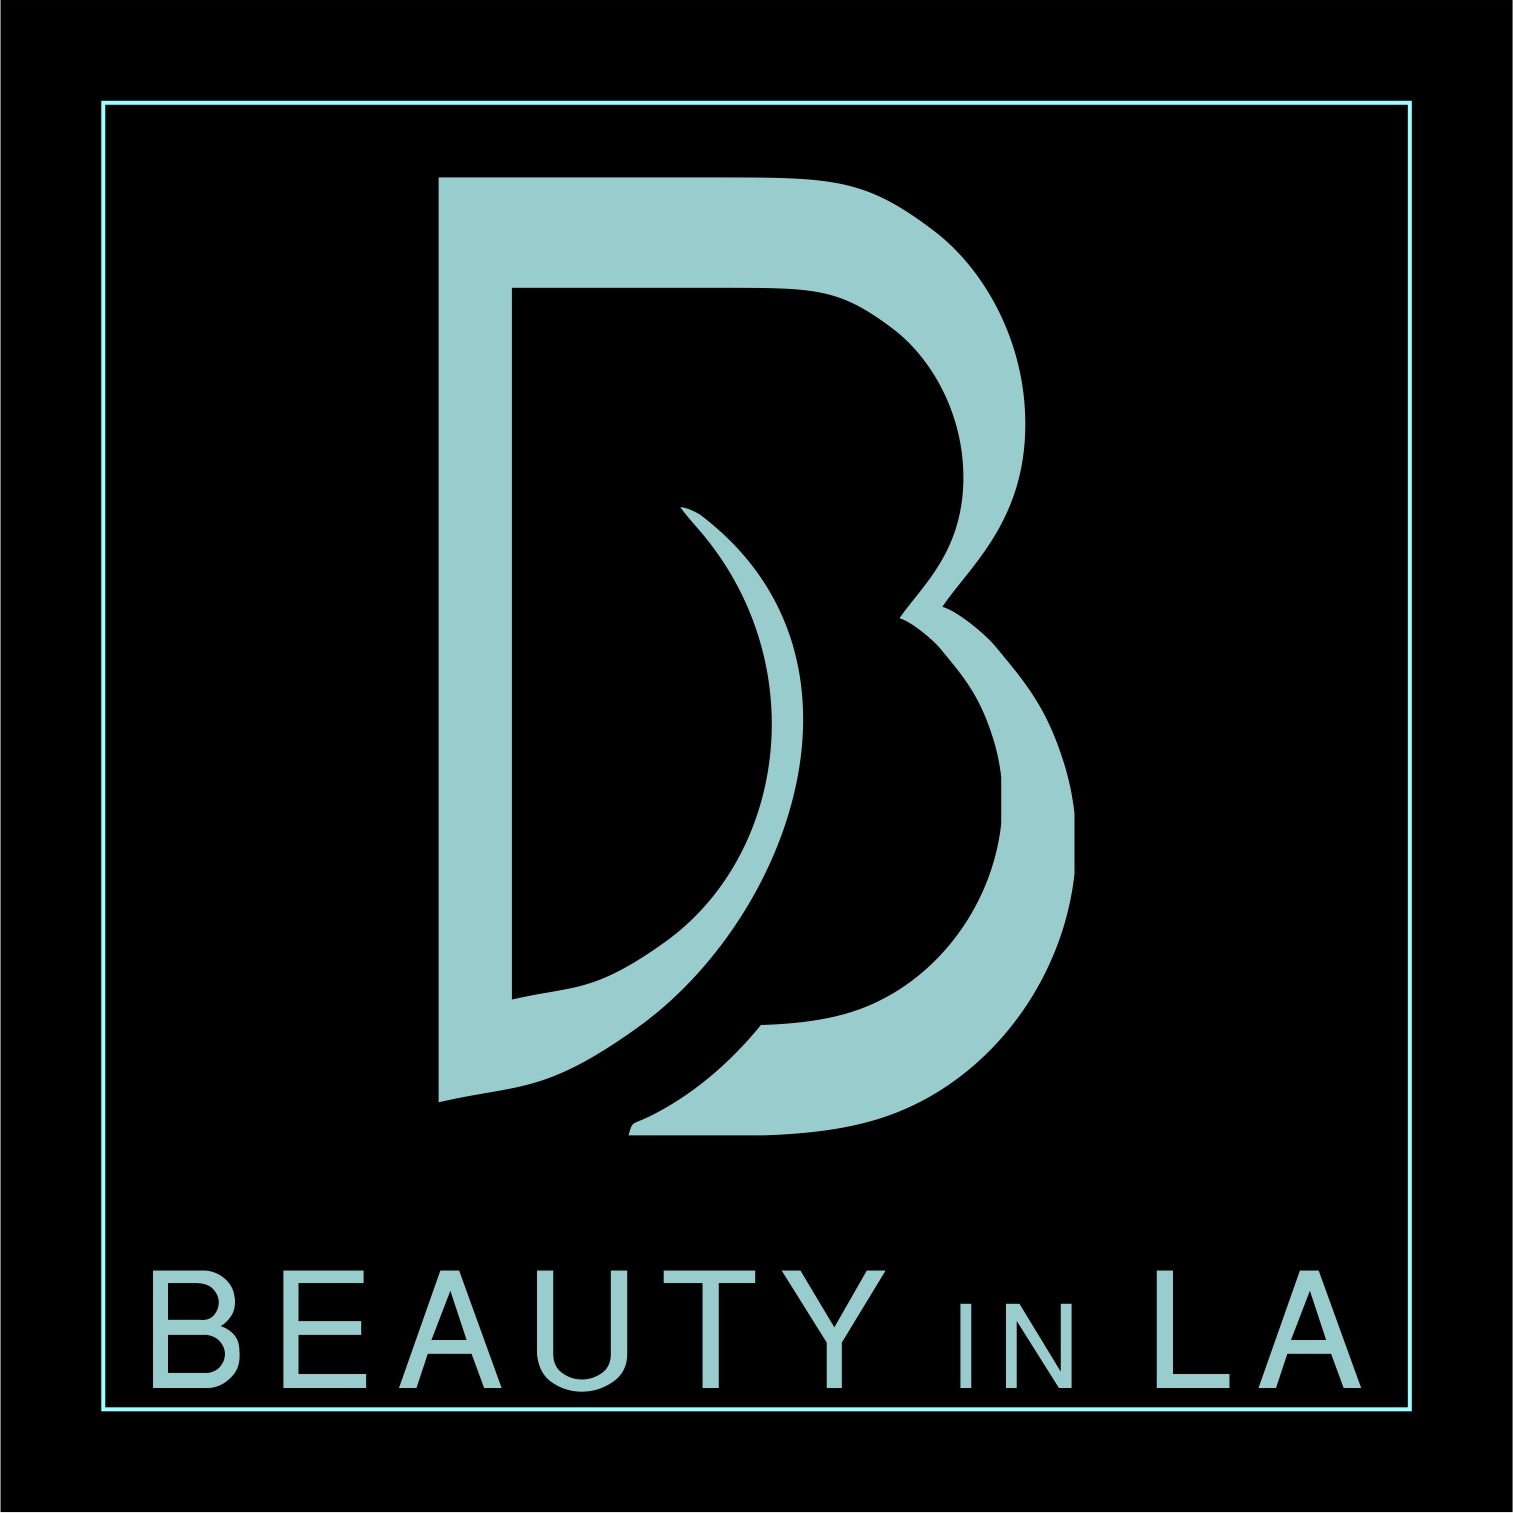 Beauty in LA